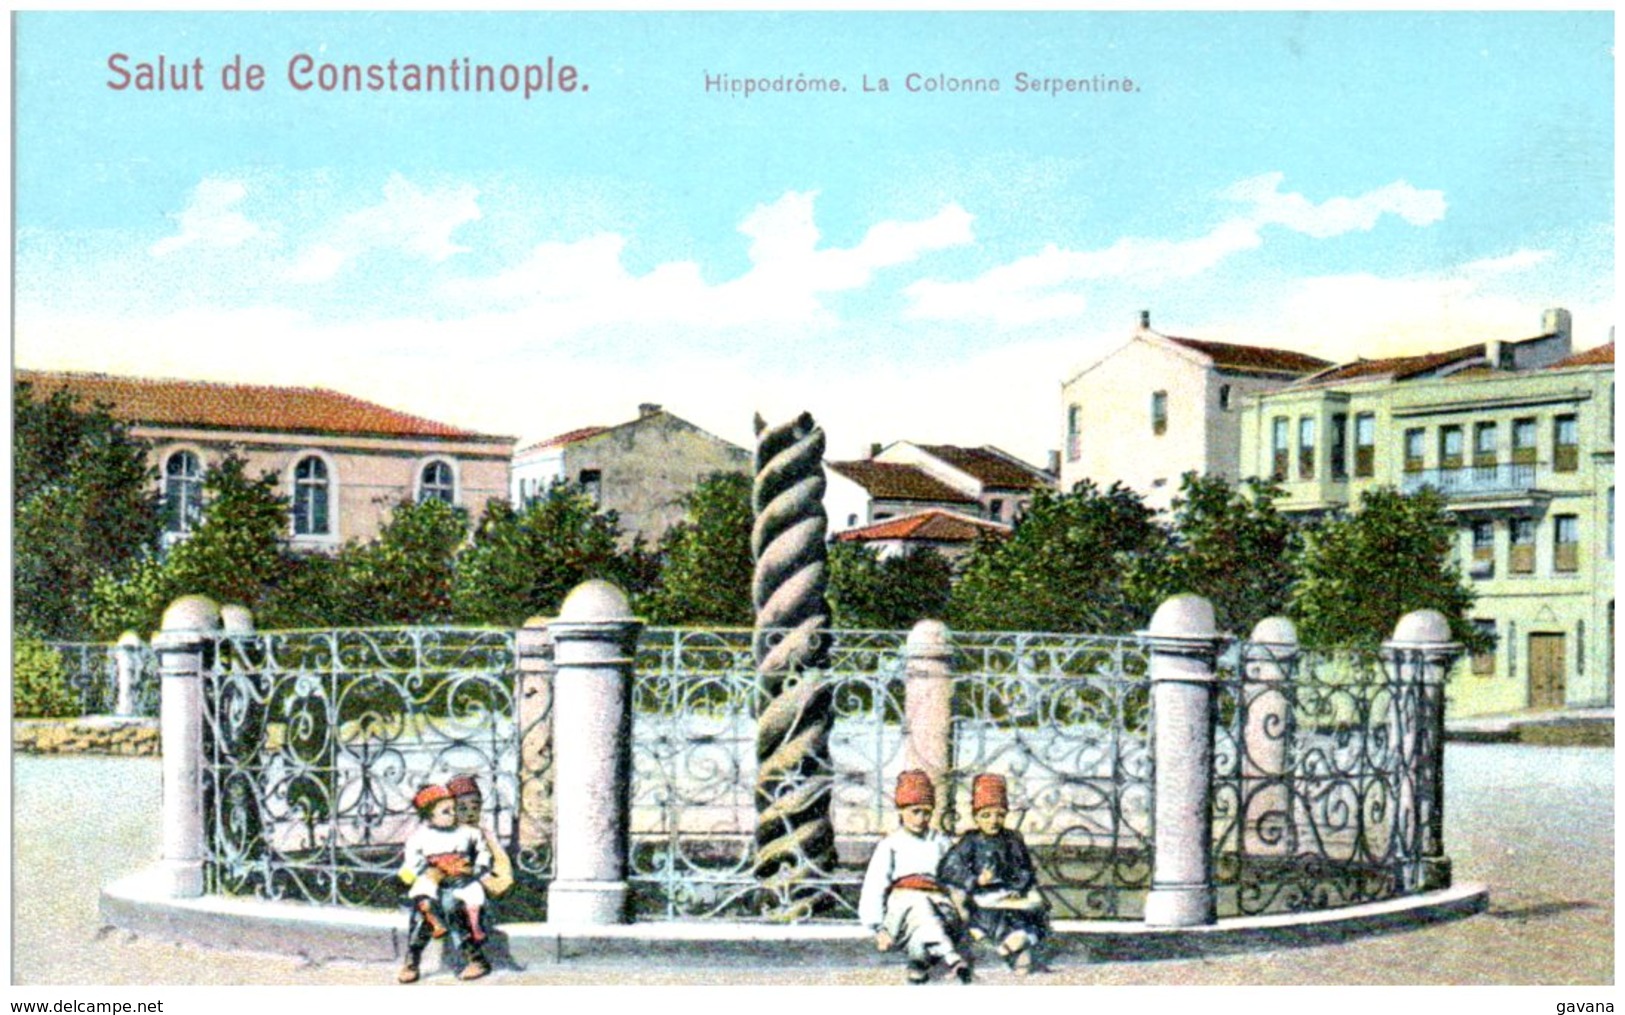 Salut De CONSTANTINOPLE - Hipodrome - La Colonne Serpentine - Turquie